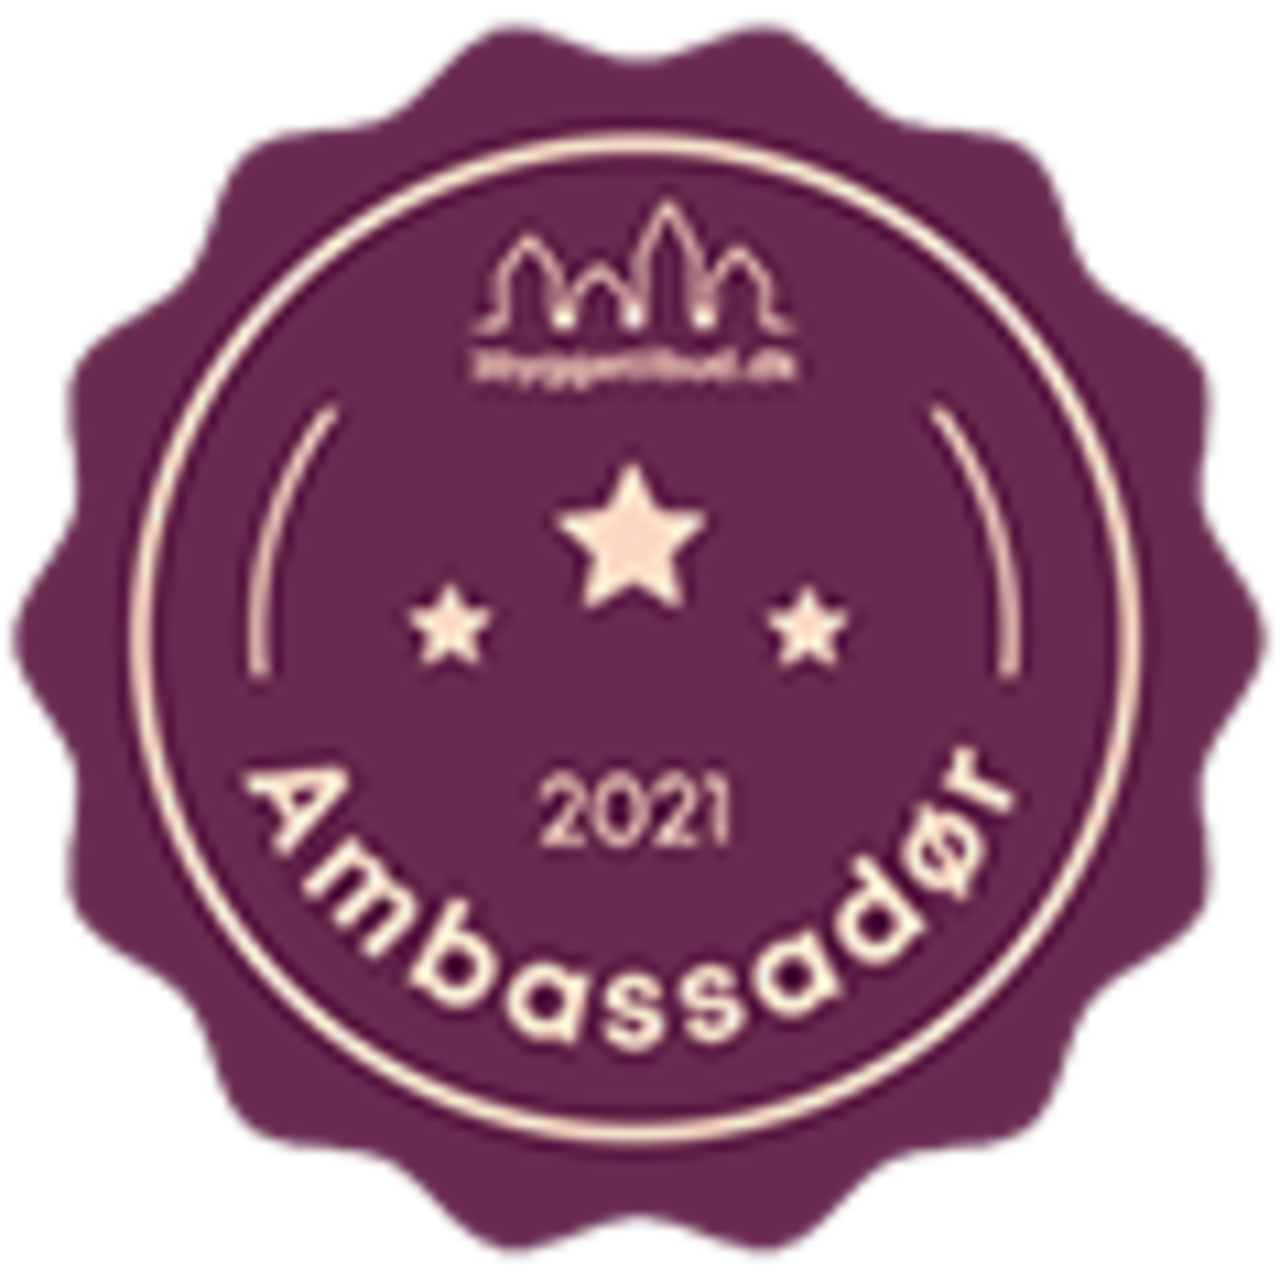 3byggetilbud 2021 ambasassadør